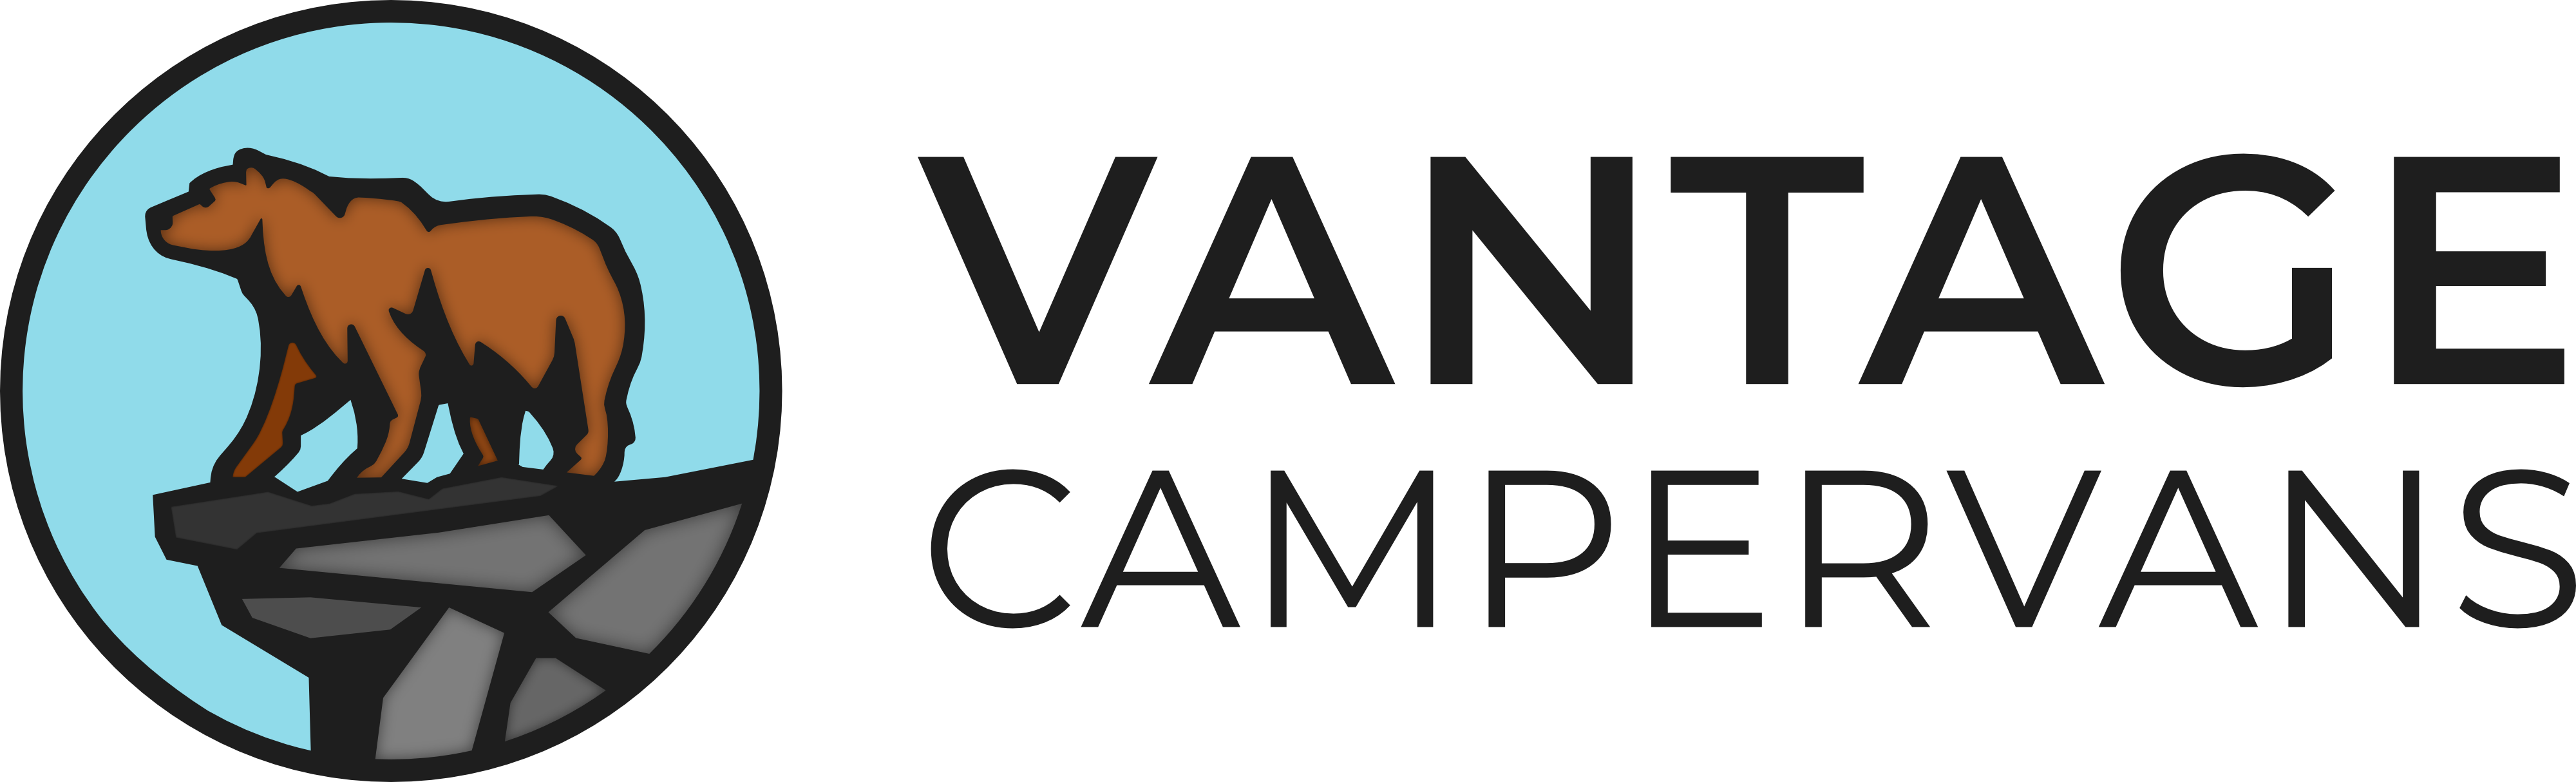 vantage campervans logo